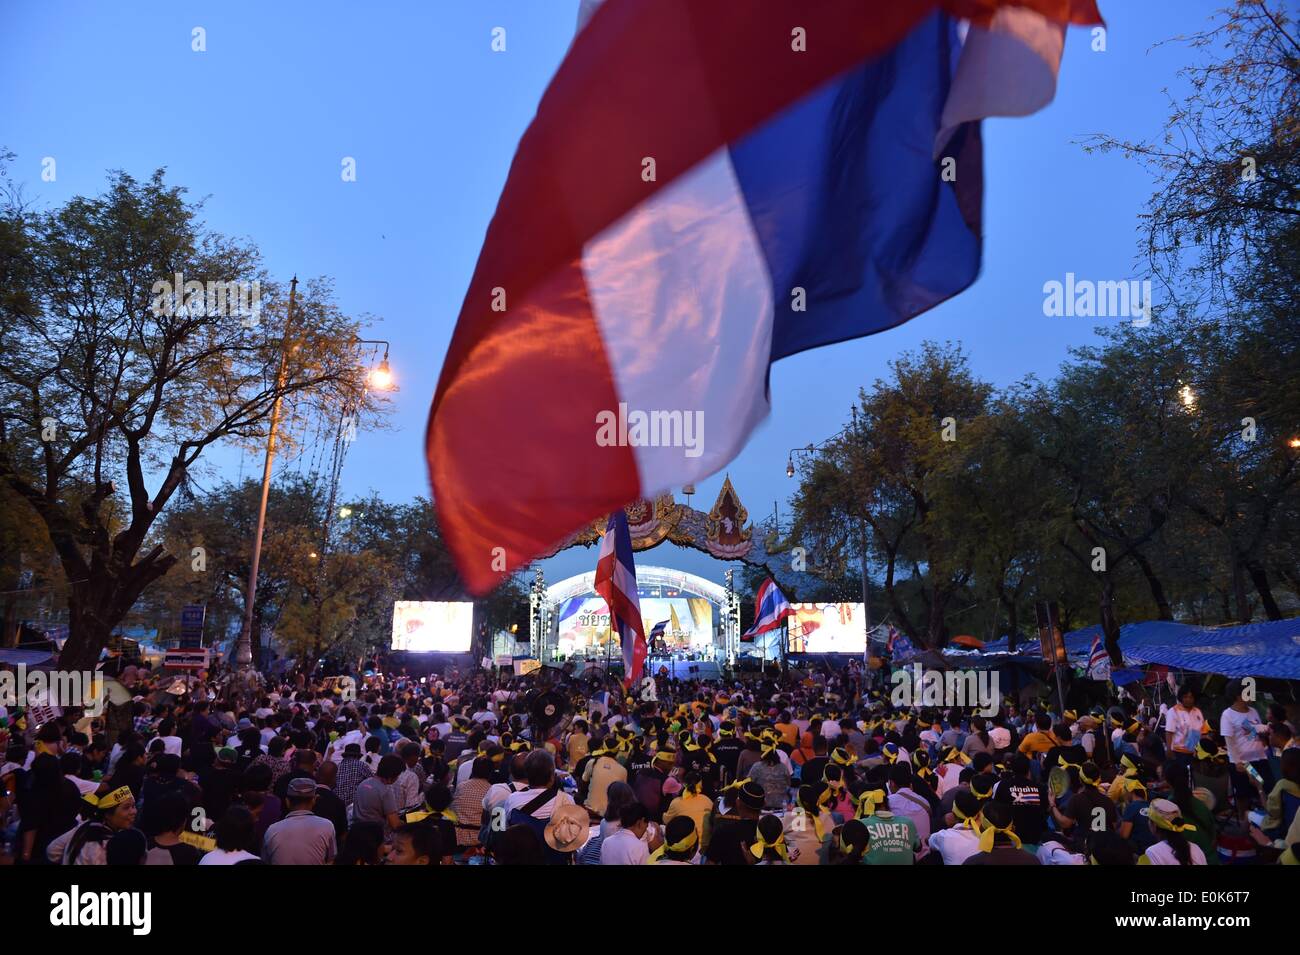 Bangkok, Thaïlande. 15 mai, 2014. Des manifestants anti-gouvernement thaïlandais participer à un rassemblement dans le centre de Bangkok, Thaïlande, le 15 mai 2014. Le chef de l'armée thaïlandaise Prayuth Chan-ocha a averti jeudi que les militaires pourraient utiliser 'force' pour maintenir la loi et l'ordre au cours de la crise politique en cours, un rapport des médias dit. Credit : Sui Lui Wai/Xinhua/Alamy Live News Banque D'Images